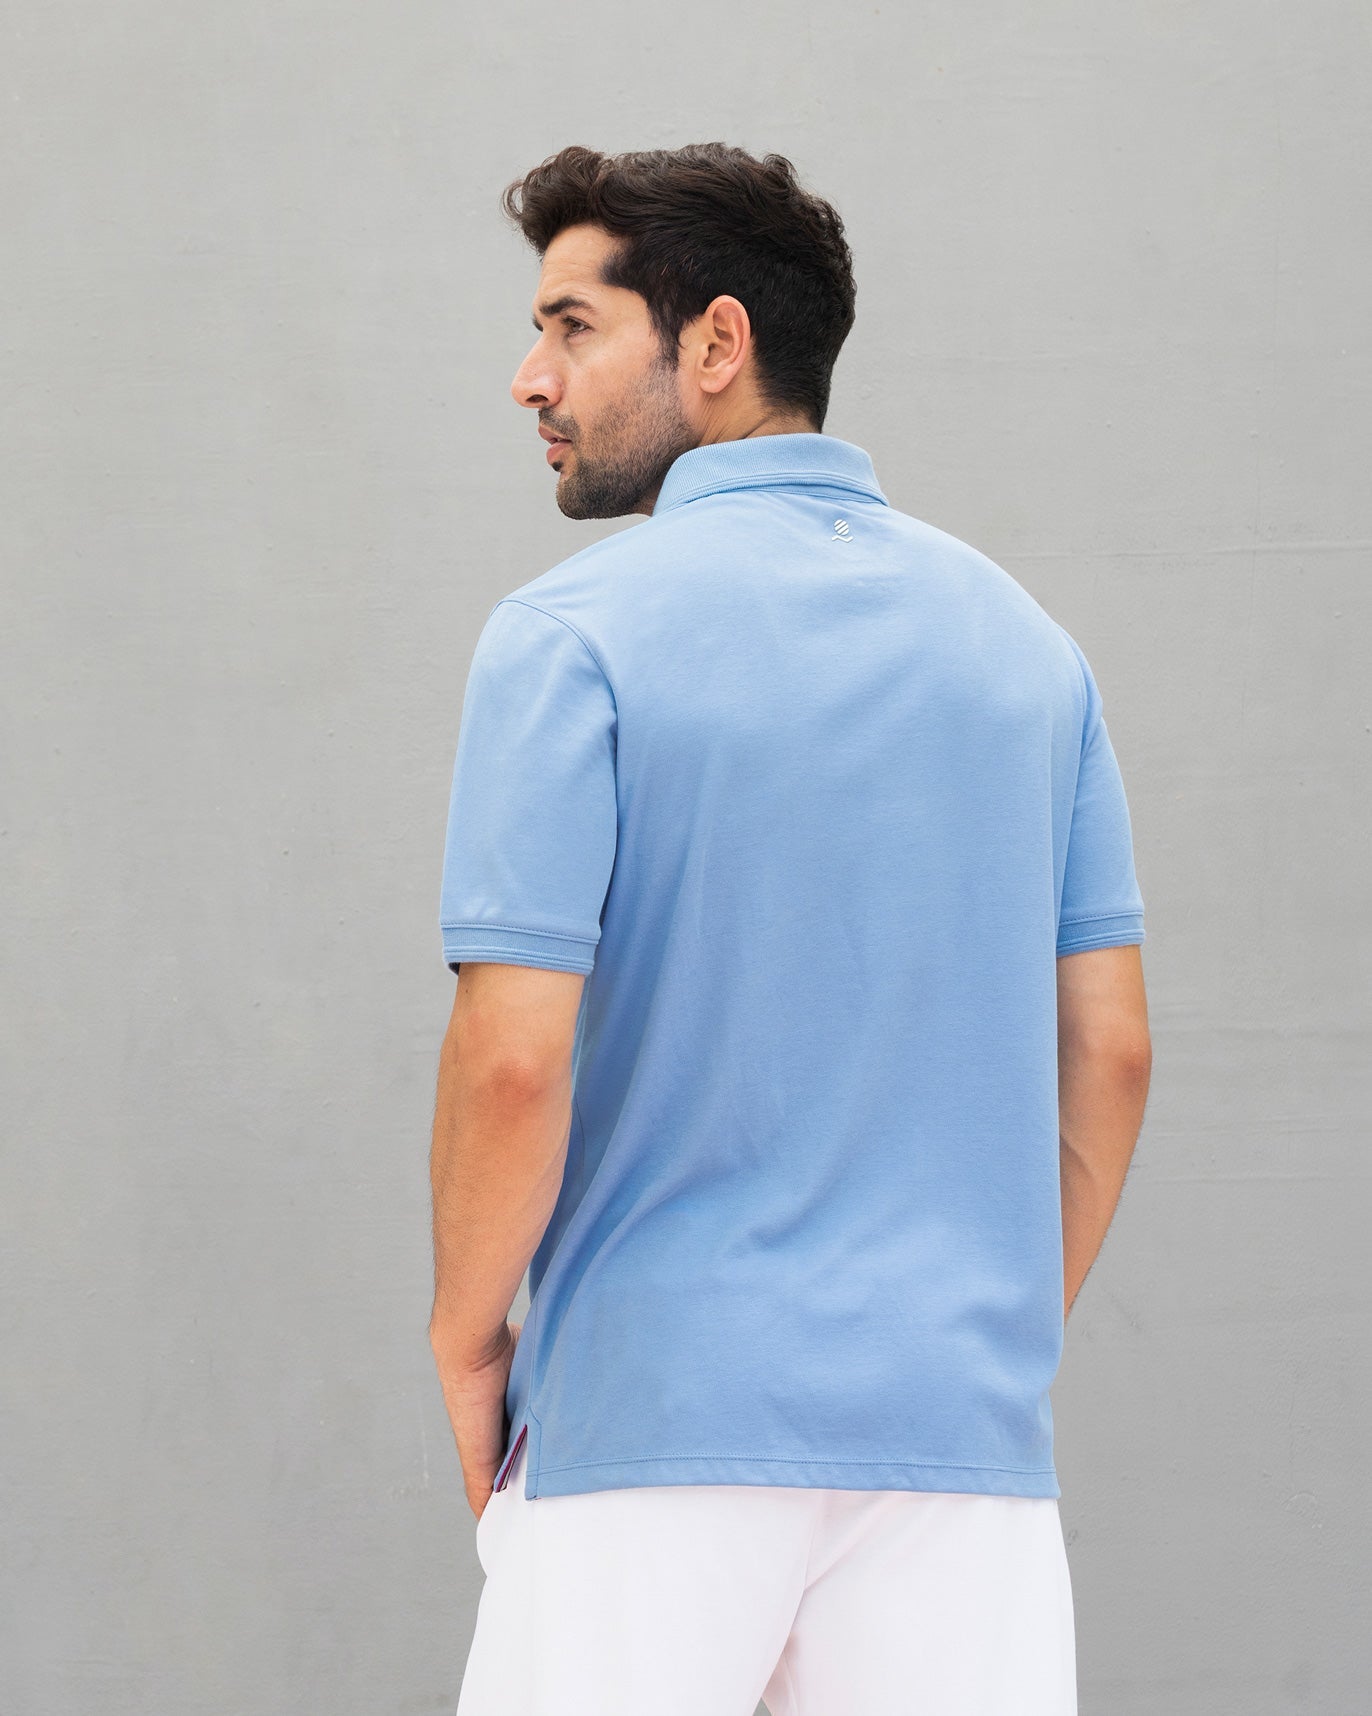 Nico Tennis Polo T-shirt - Blue